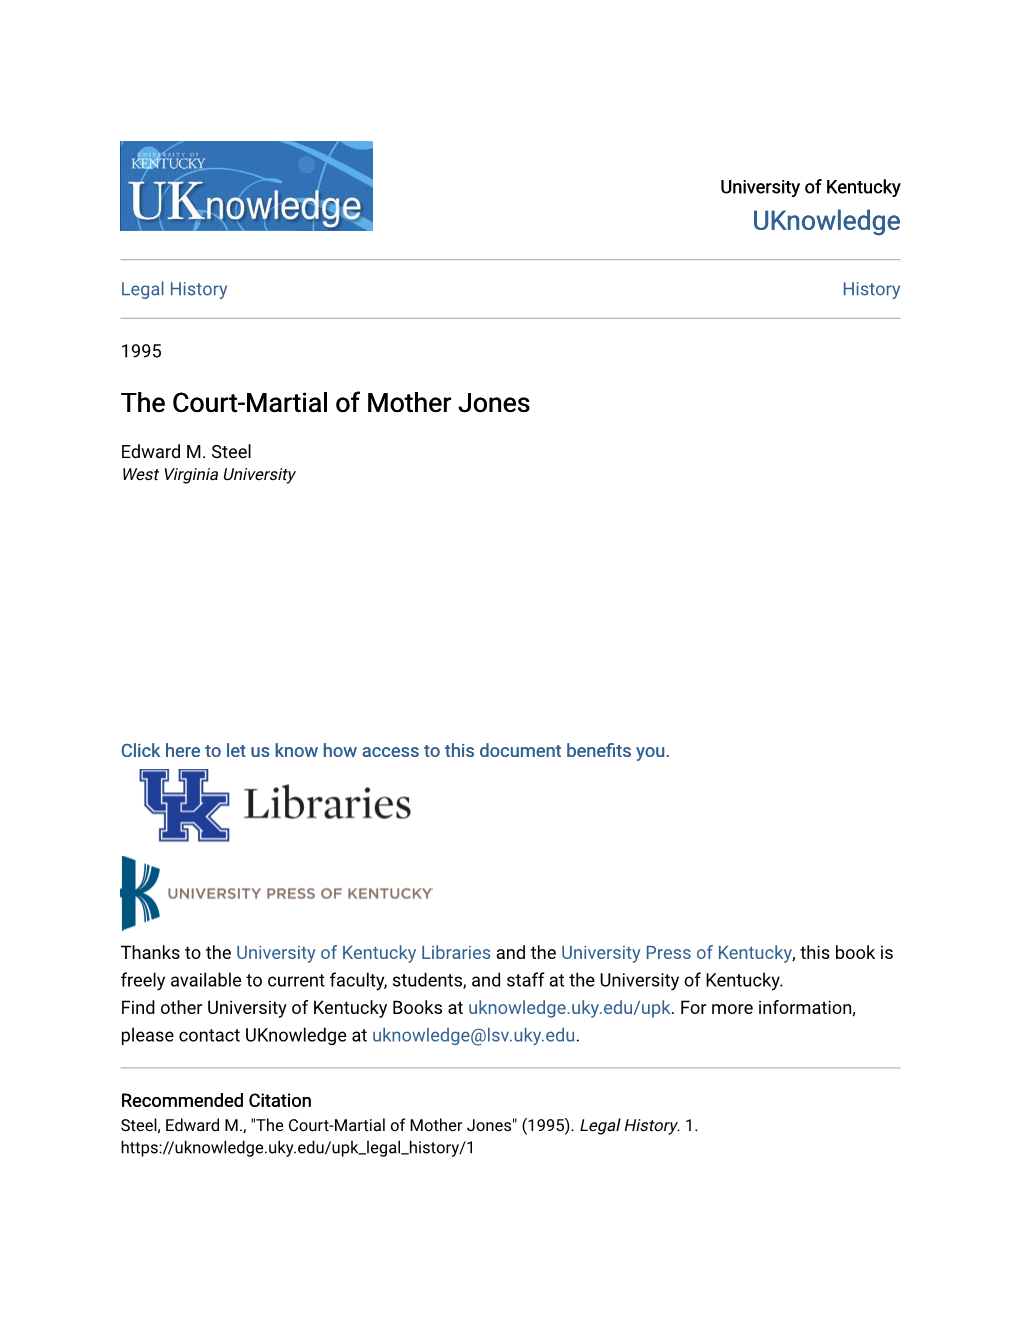 The Court-Martial of Mother Jones